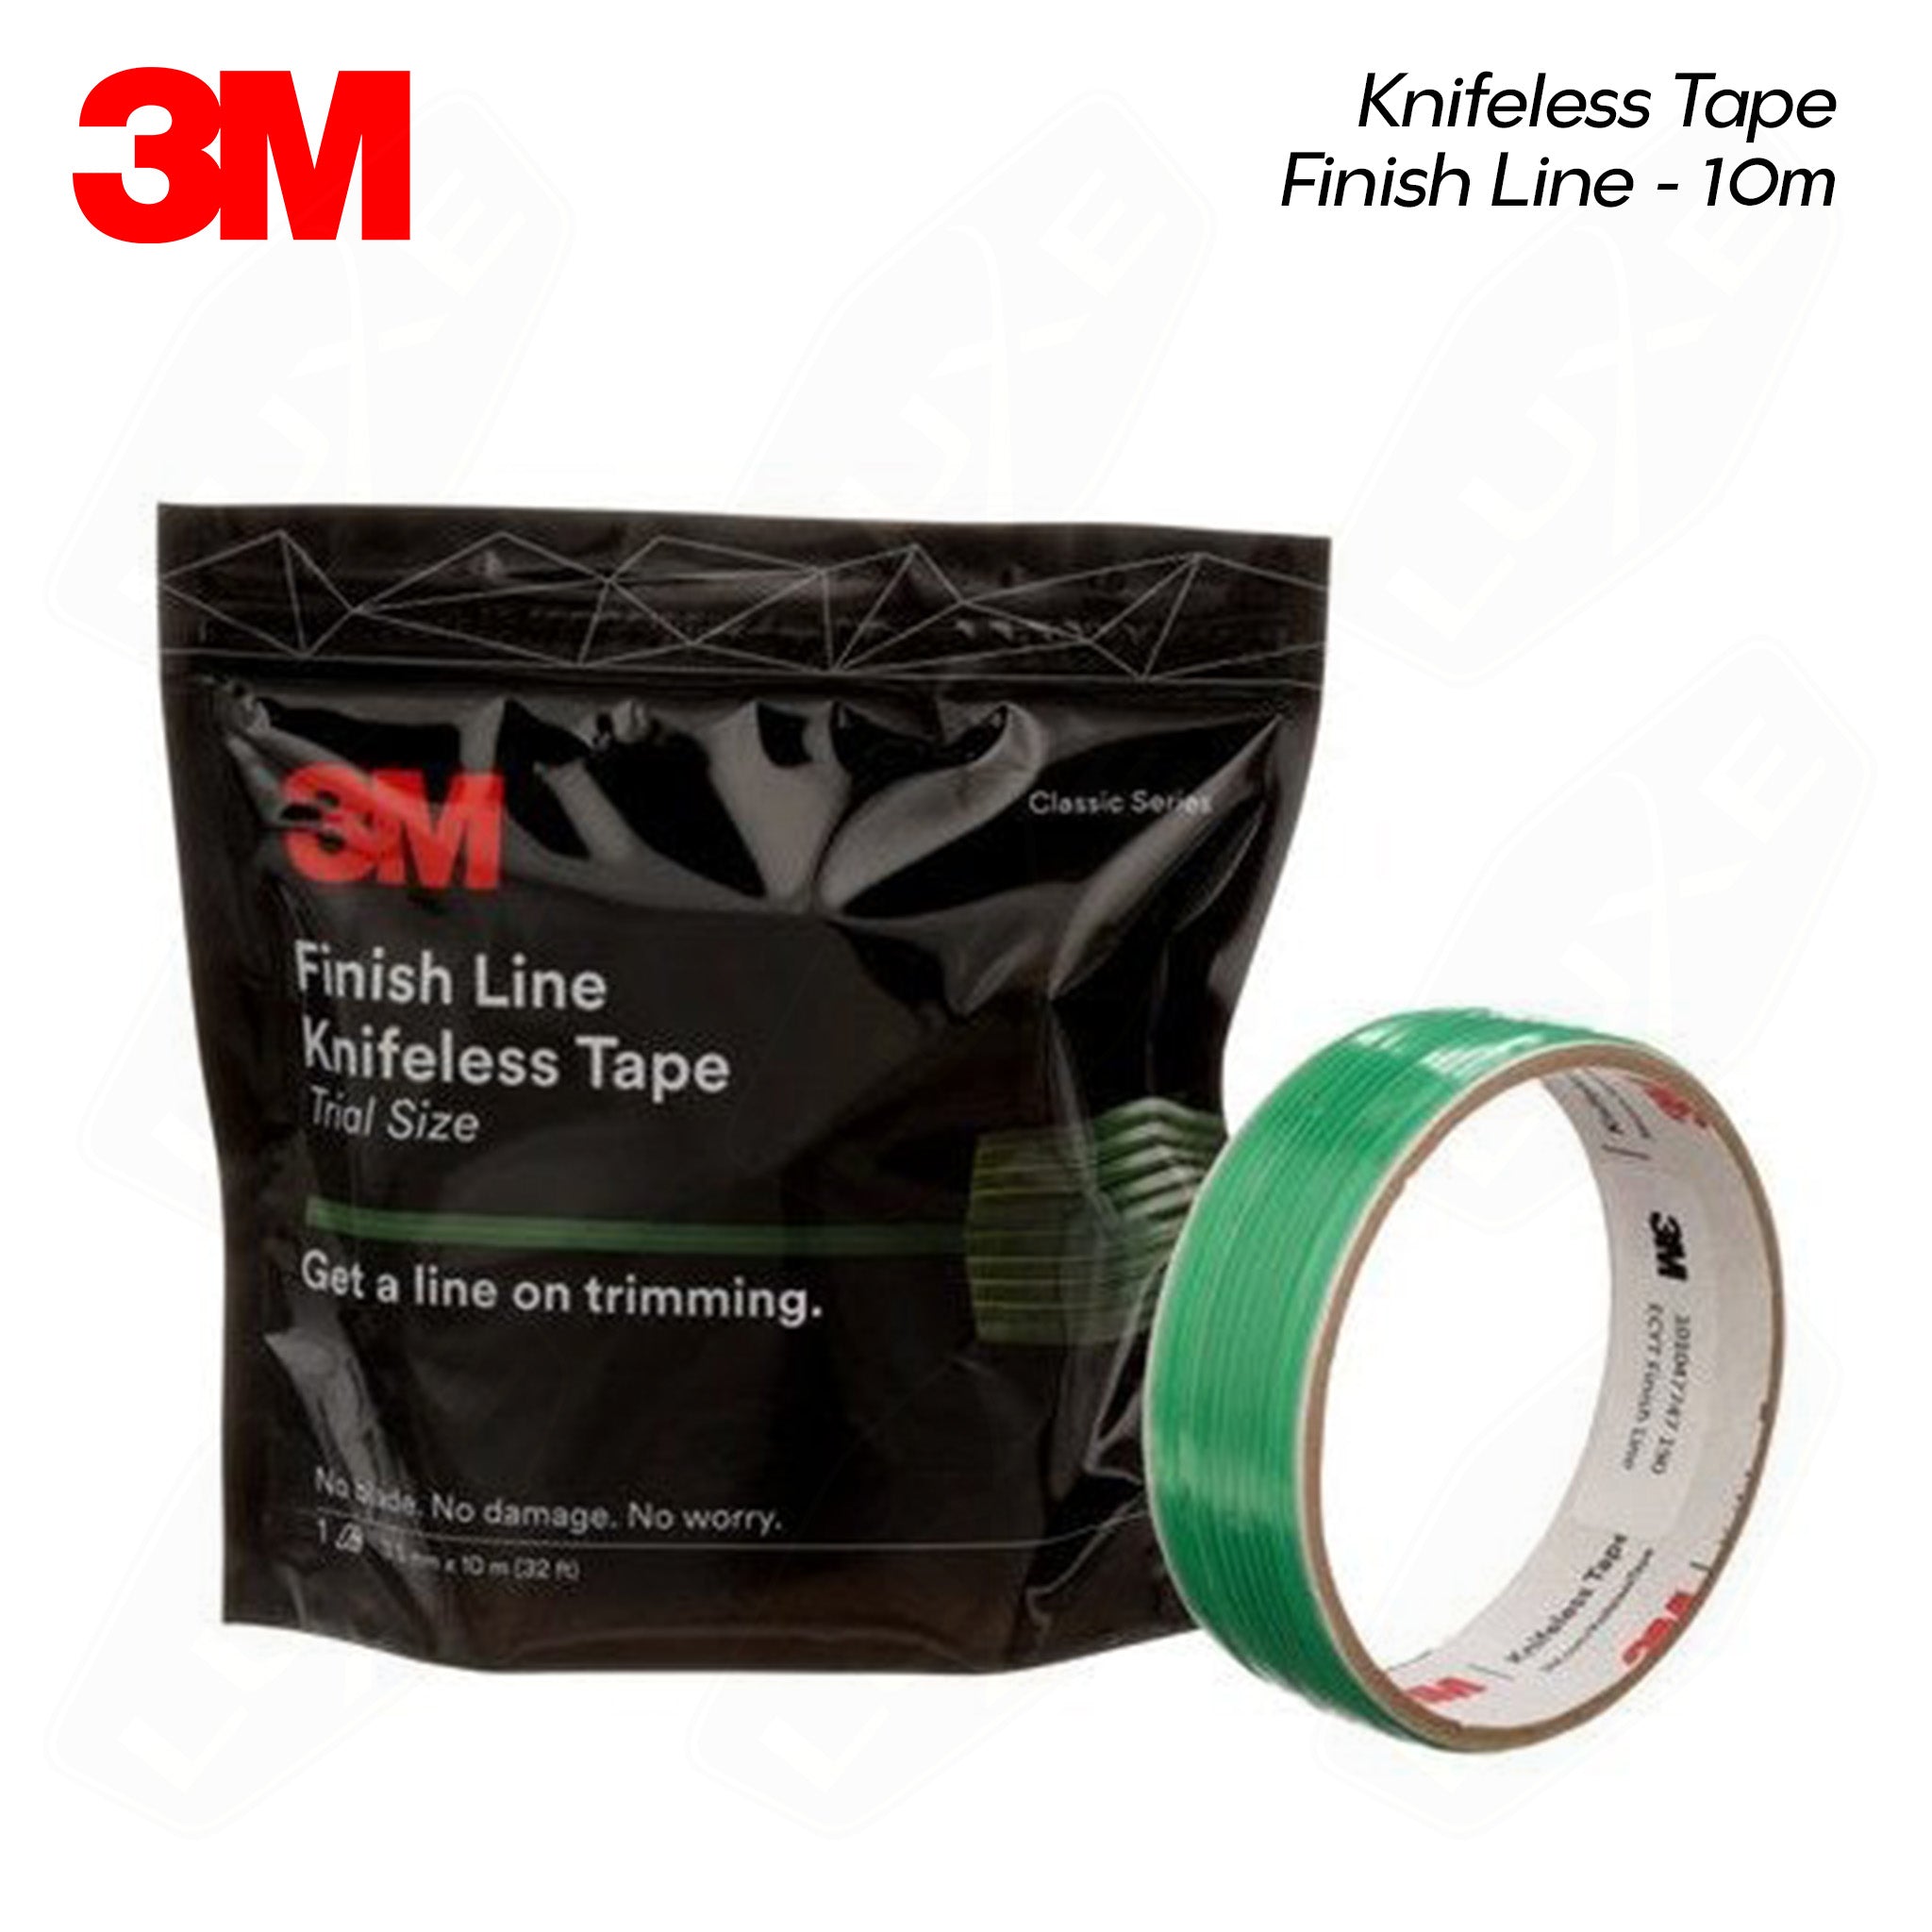 3M Finish Line Knifeless Tape KTS-FL2, Trial Size, Green, 3.5 mm x 10 m